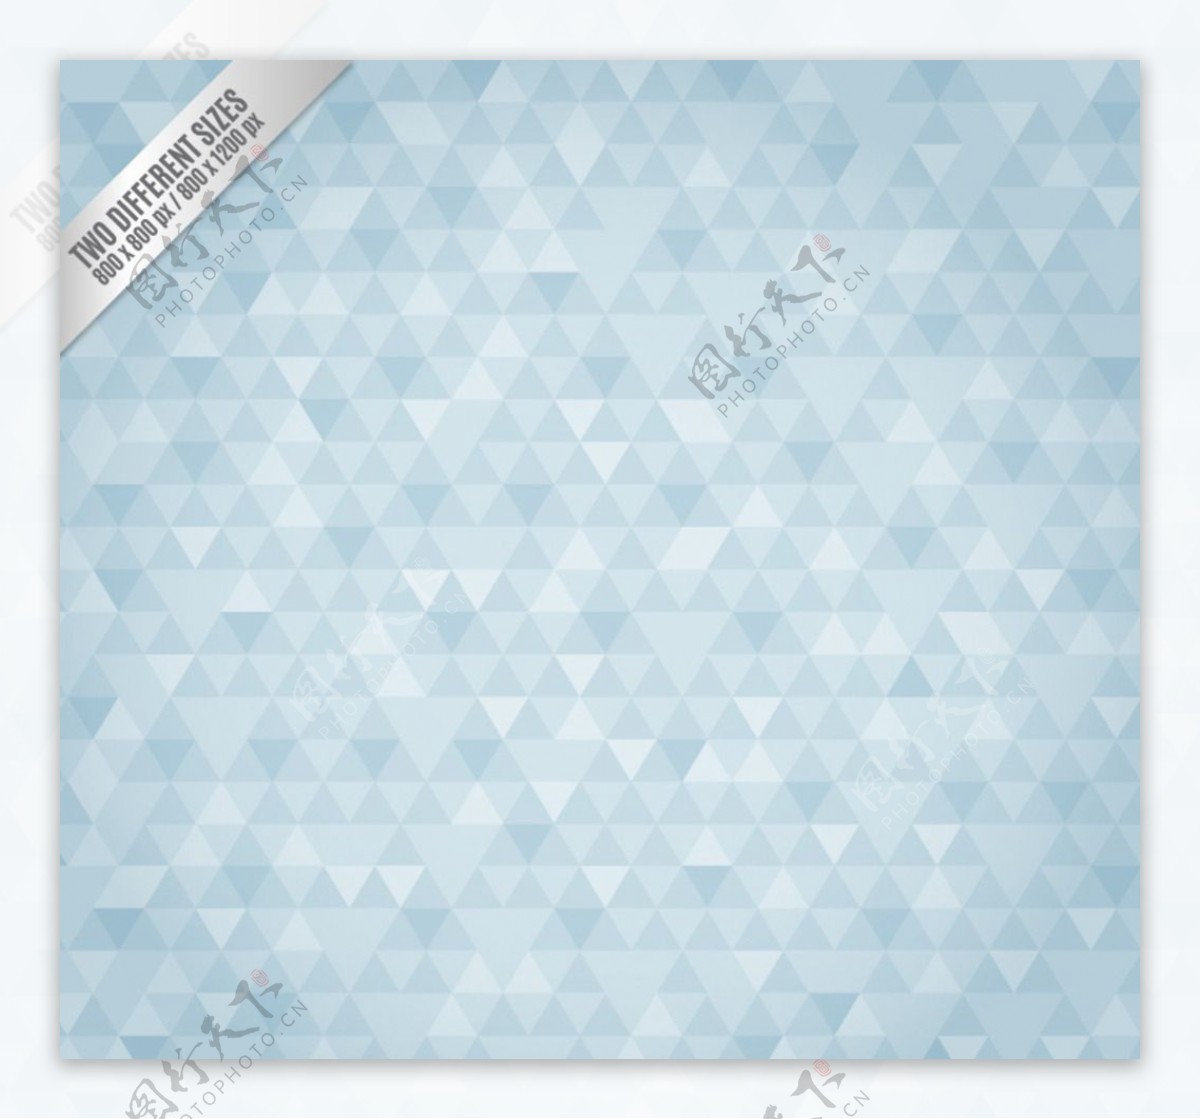 淡蓝色三角格纹背景矢量素材